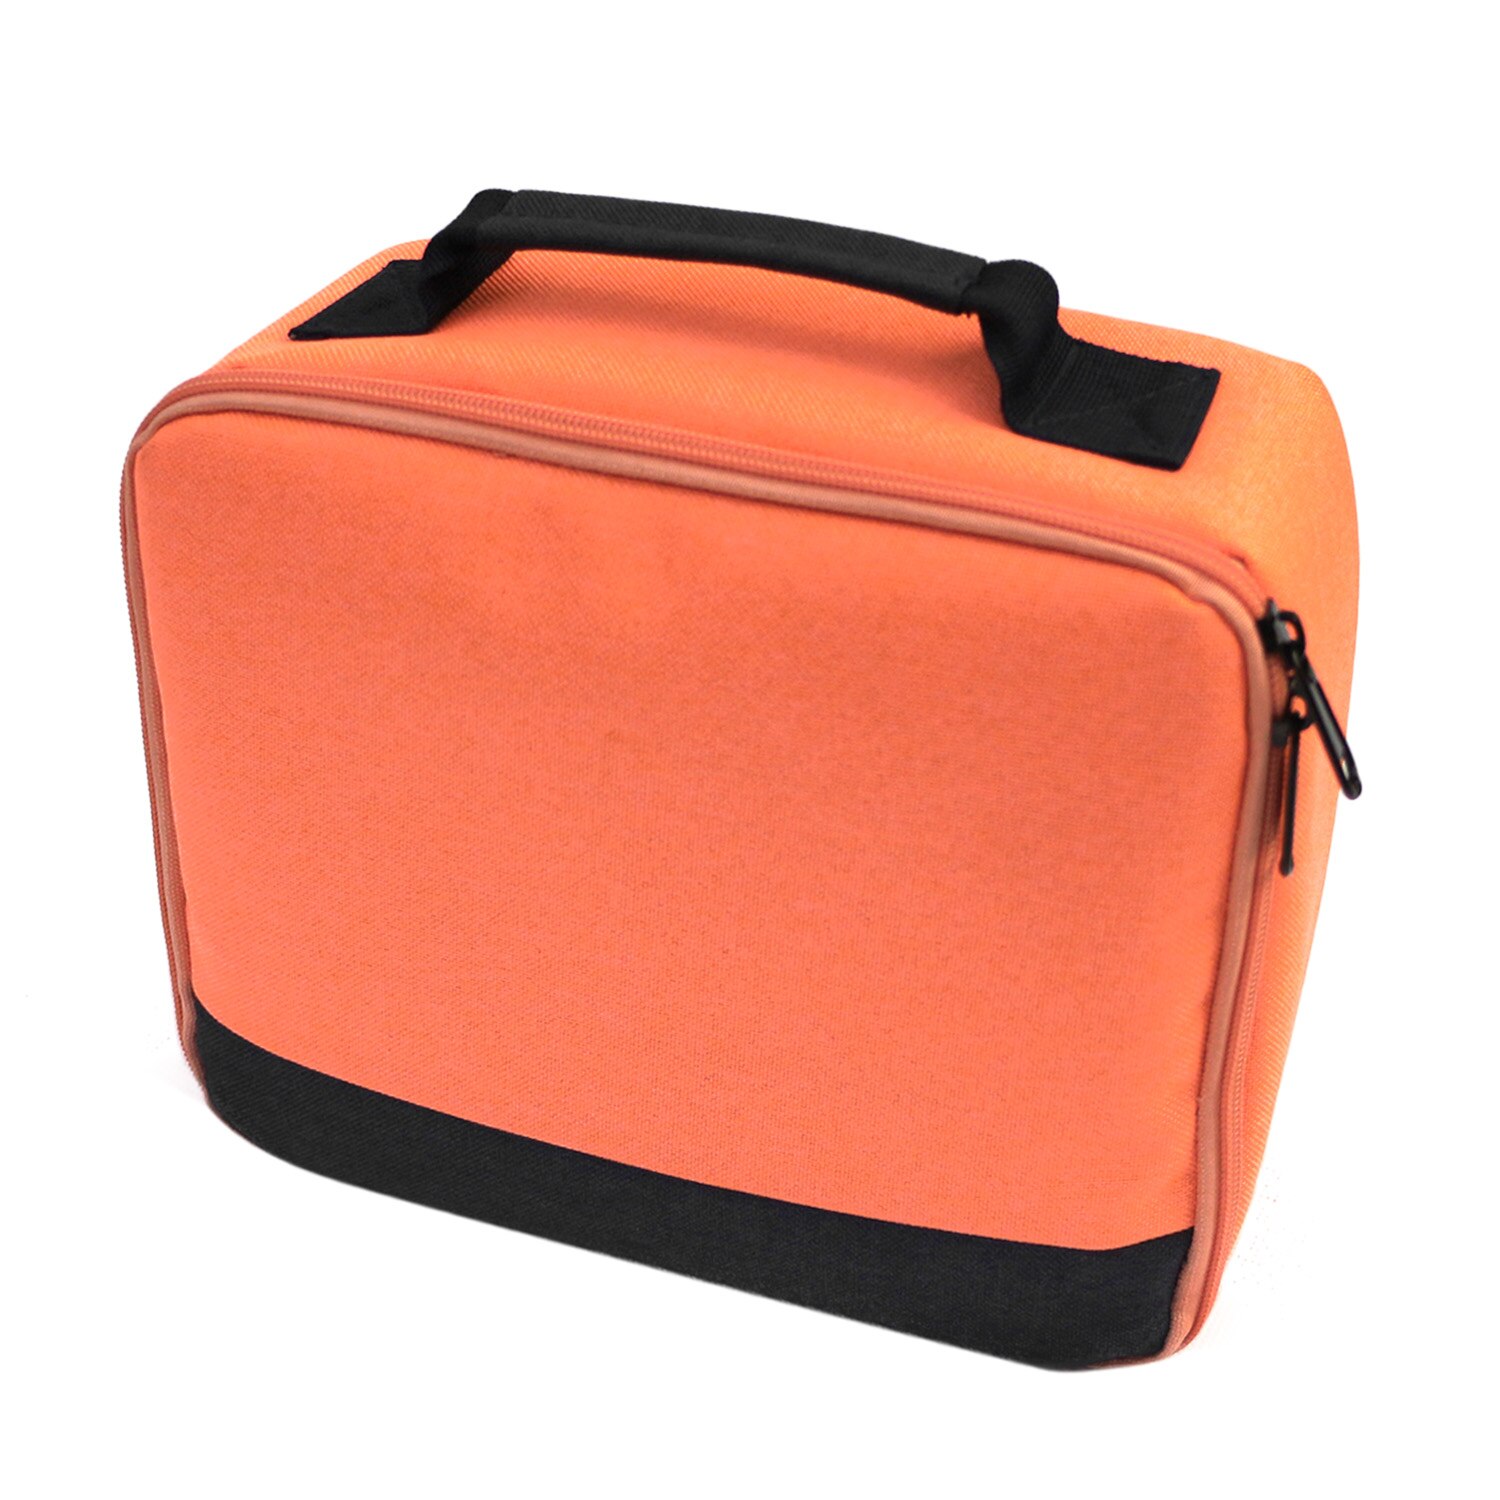 SUNNYLIFE Kratz Stoßfest Leinwand Lagerung Tragen Tasche Handtasche fallen Beutel für Selphy CP910 1200 Drucker Projektoren Projetor: Orange